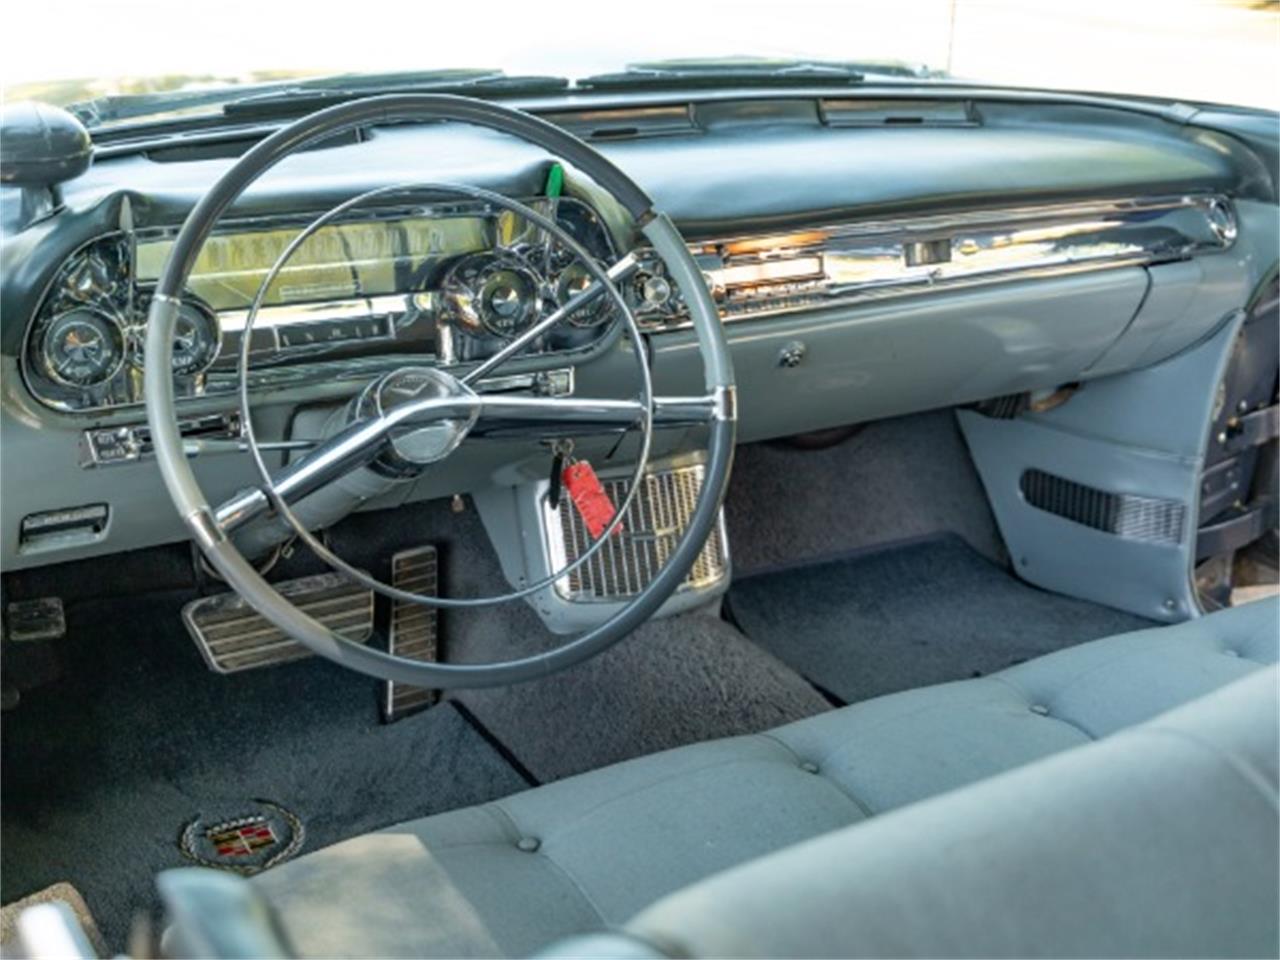 1958 Cadillac Series 70 Eldorado Brougham